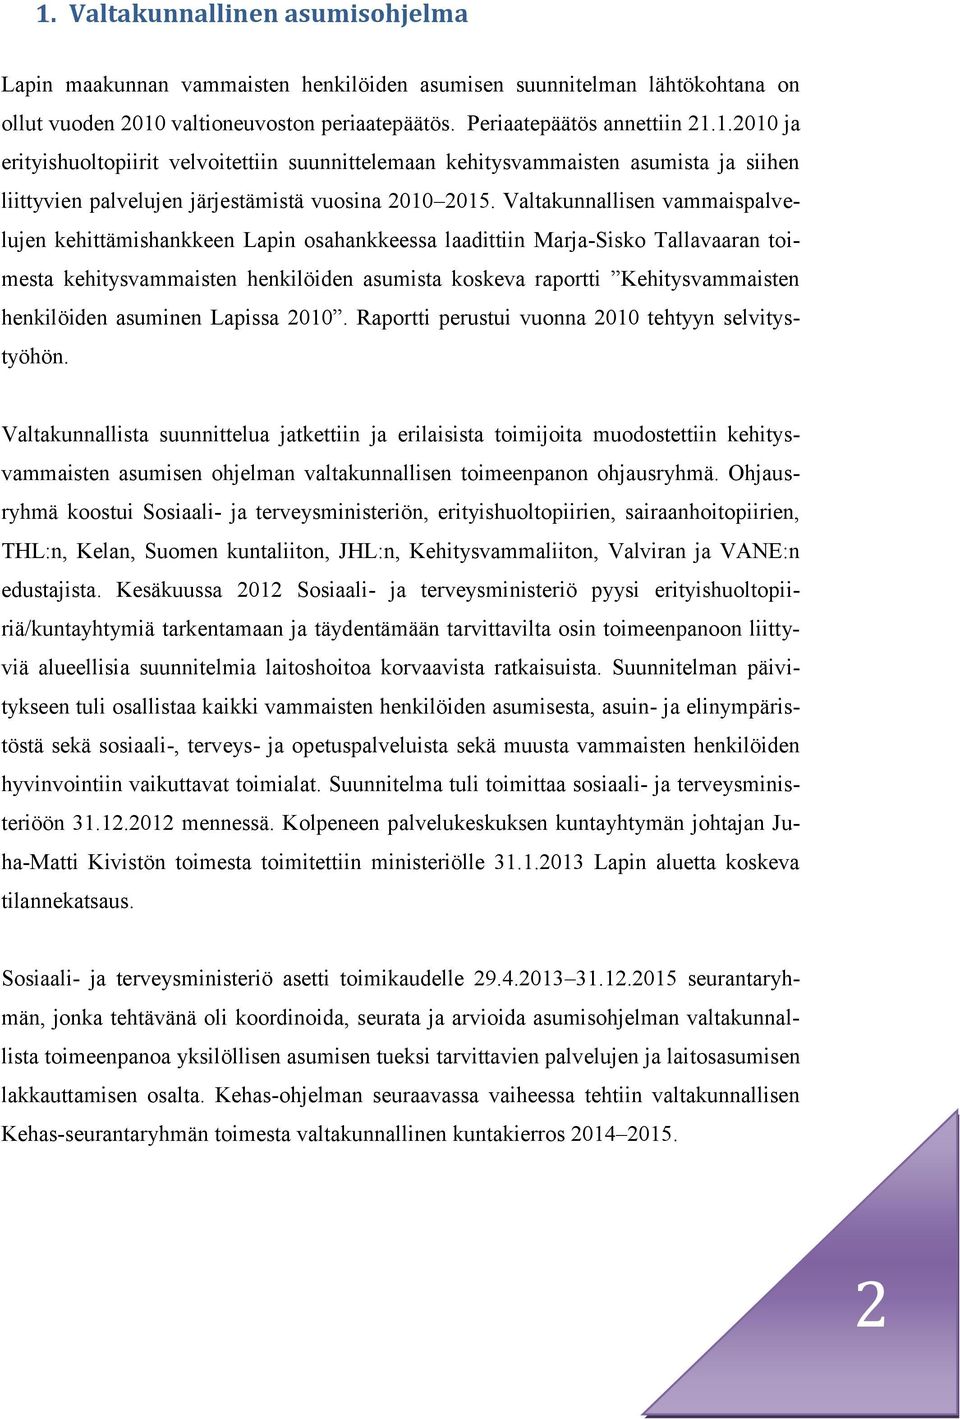 henkilöiden asuminen Lapissa 2010. Raportti perustui vuonna 2010 tehtyyn selvitystyöhön.